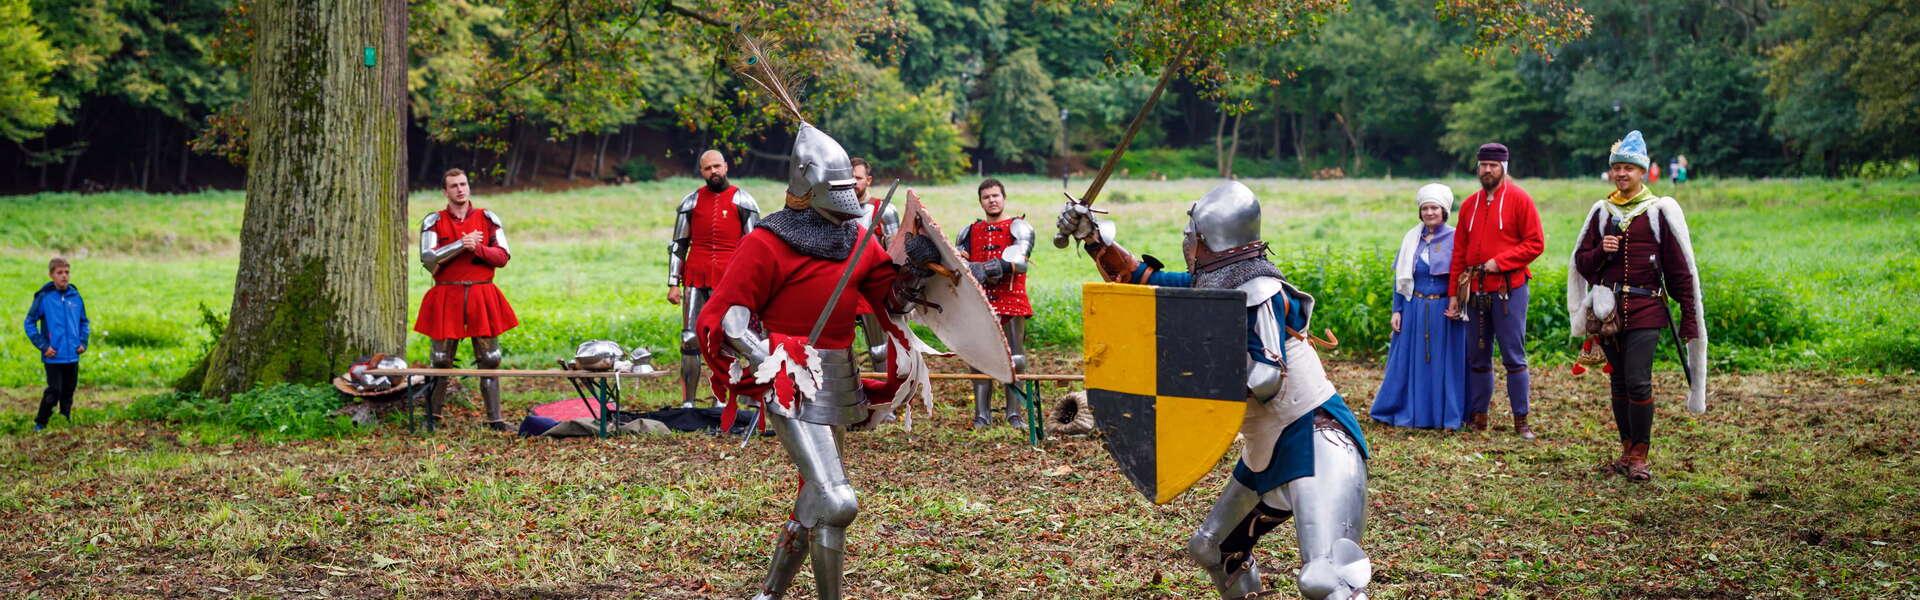 Zwei als Ritter verkleidete Männer nehmen an einer Schlachtnachstellung teil.